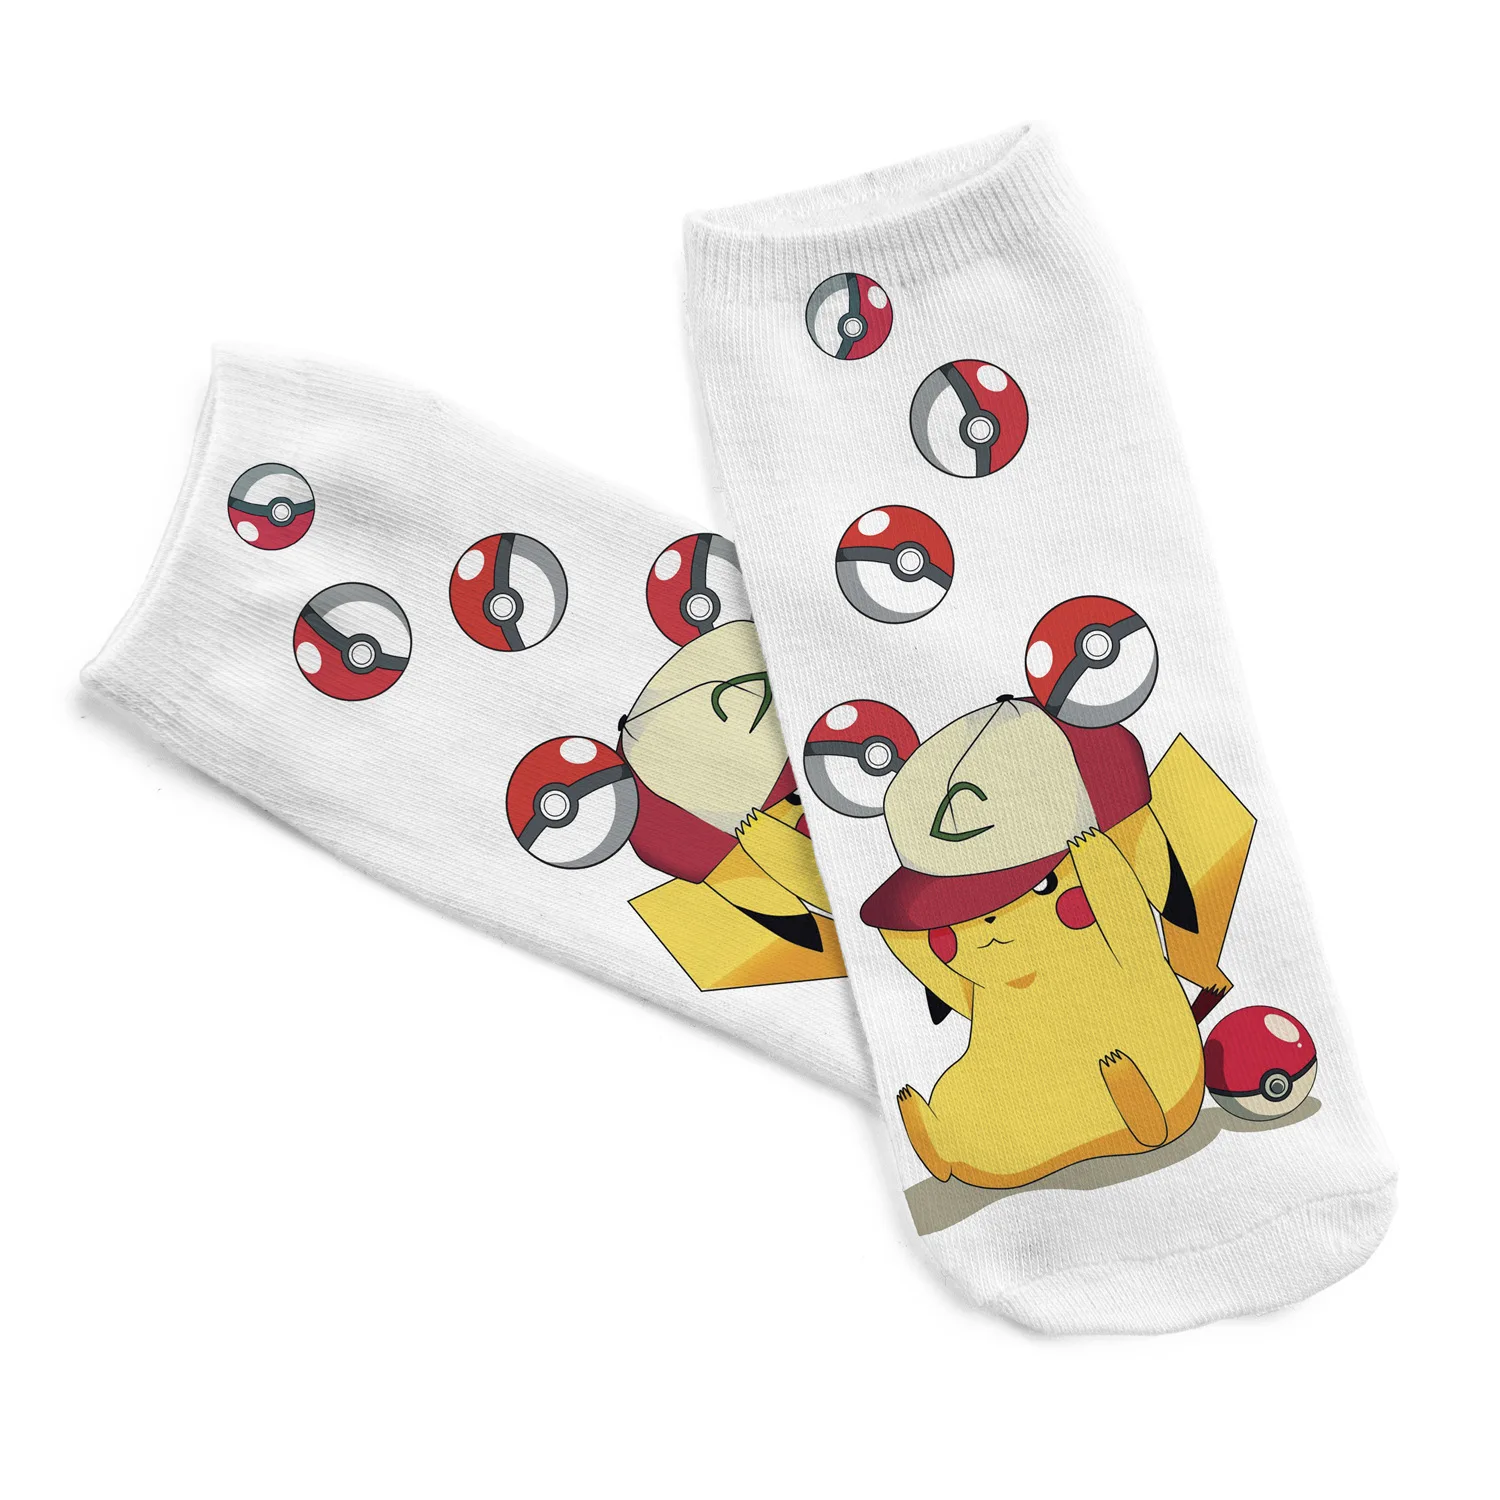 Kawaii Pokemon Poke шарик Пикачу девушка хлопковые носки забавные женские милые носки японский мультфильм печатных мальчик короткие носки